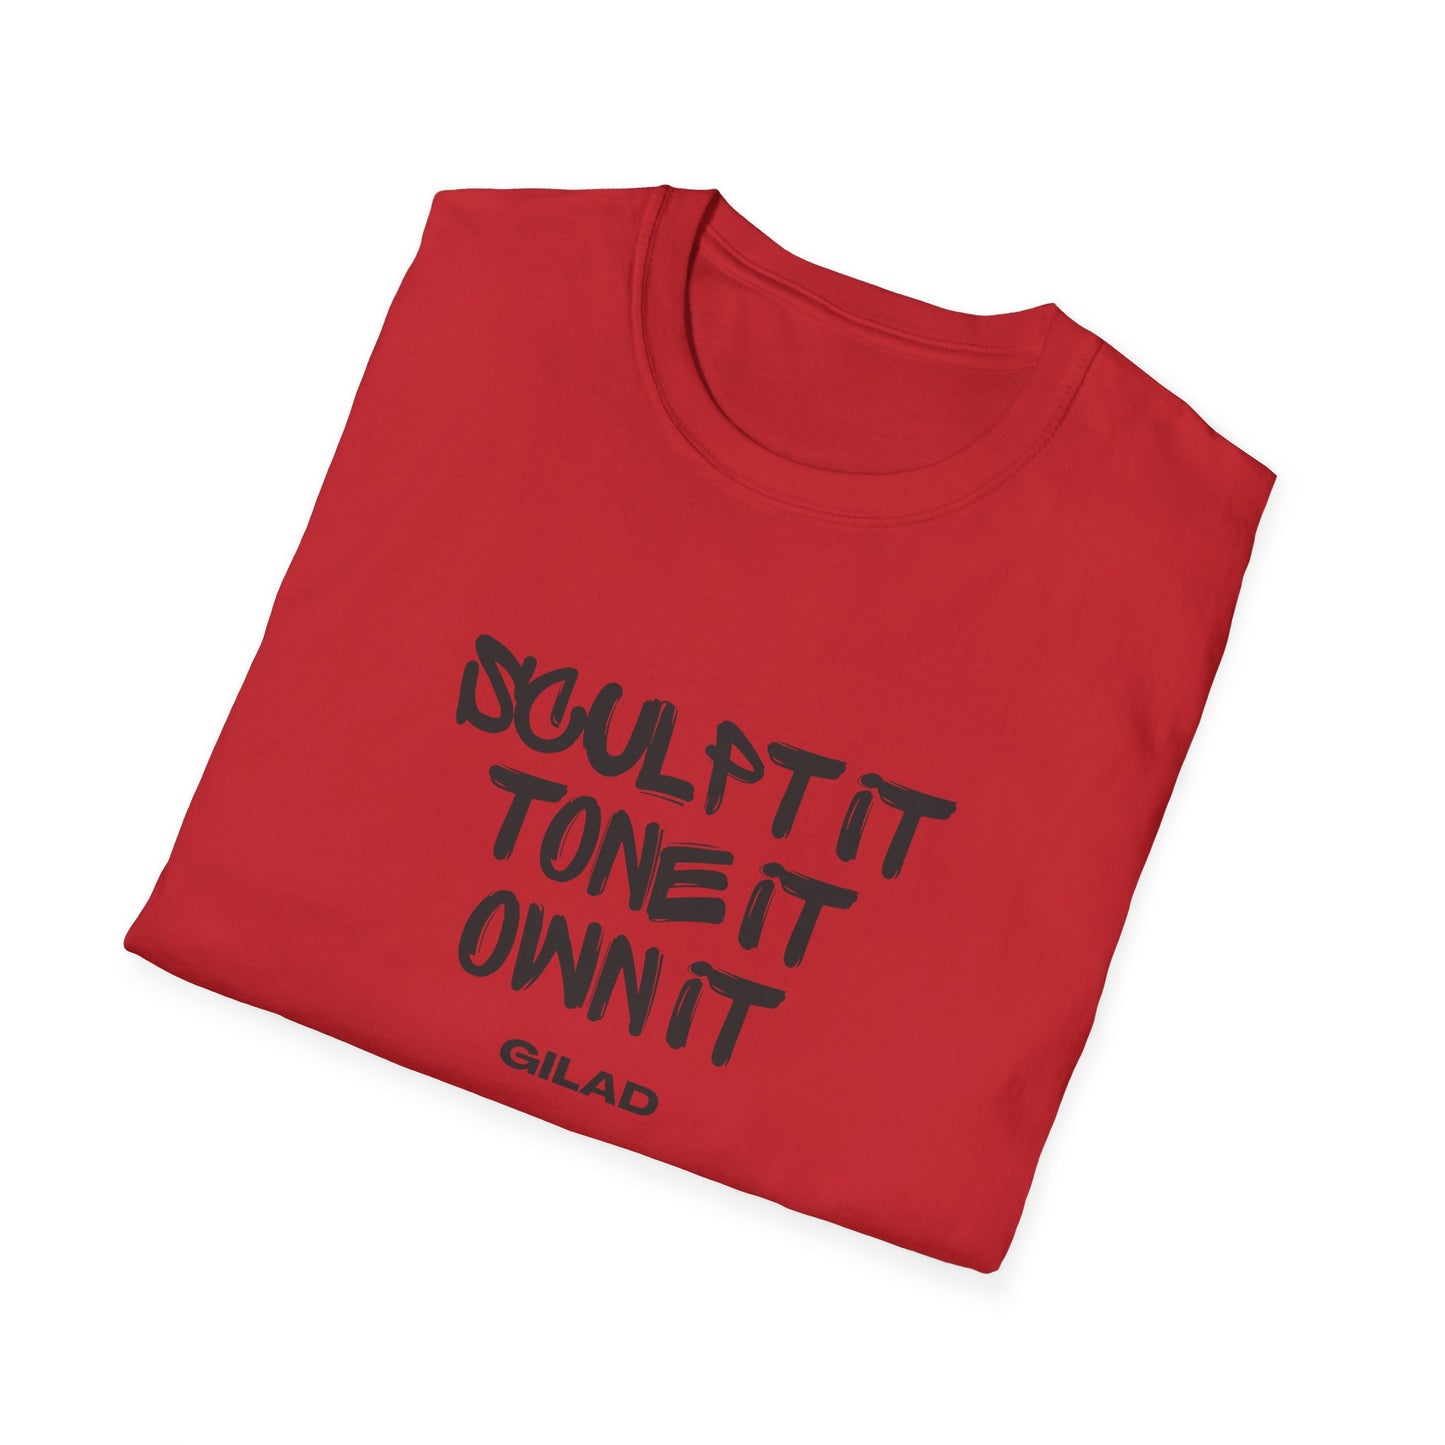 Sculpt It, Tone It, Own It | Unisex Softstyle T-Shirt